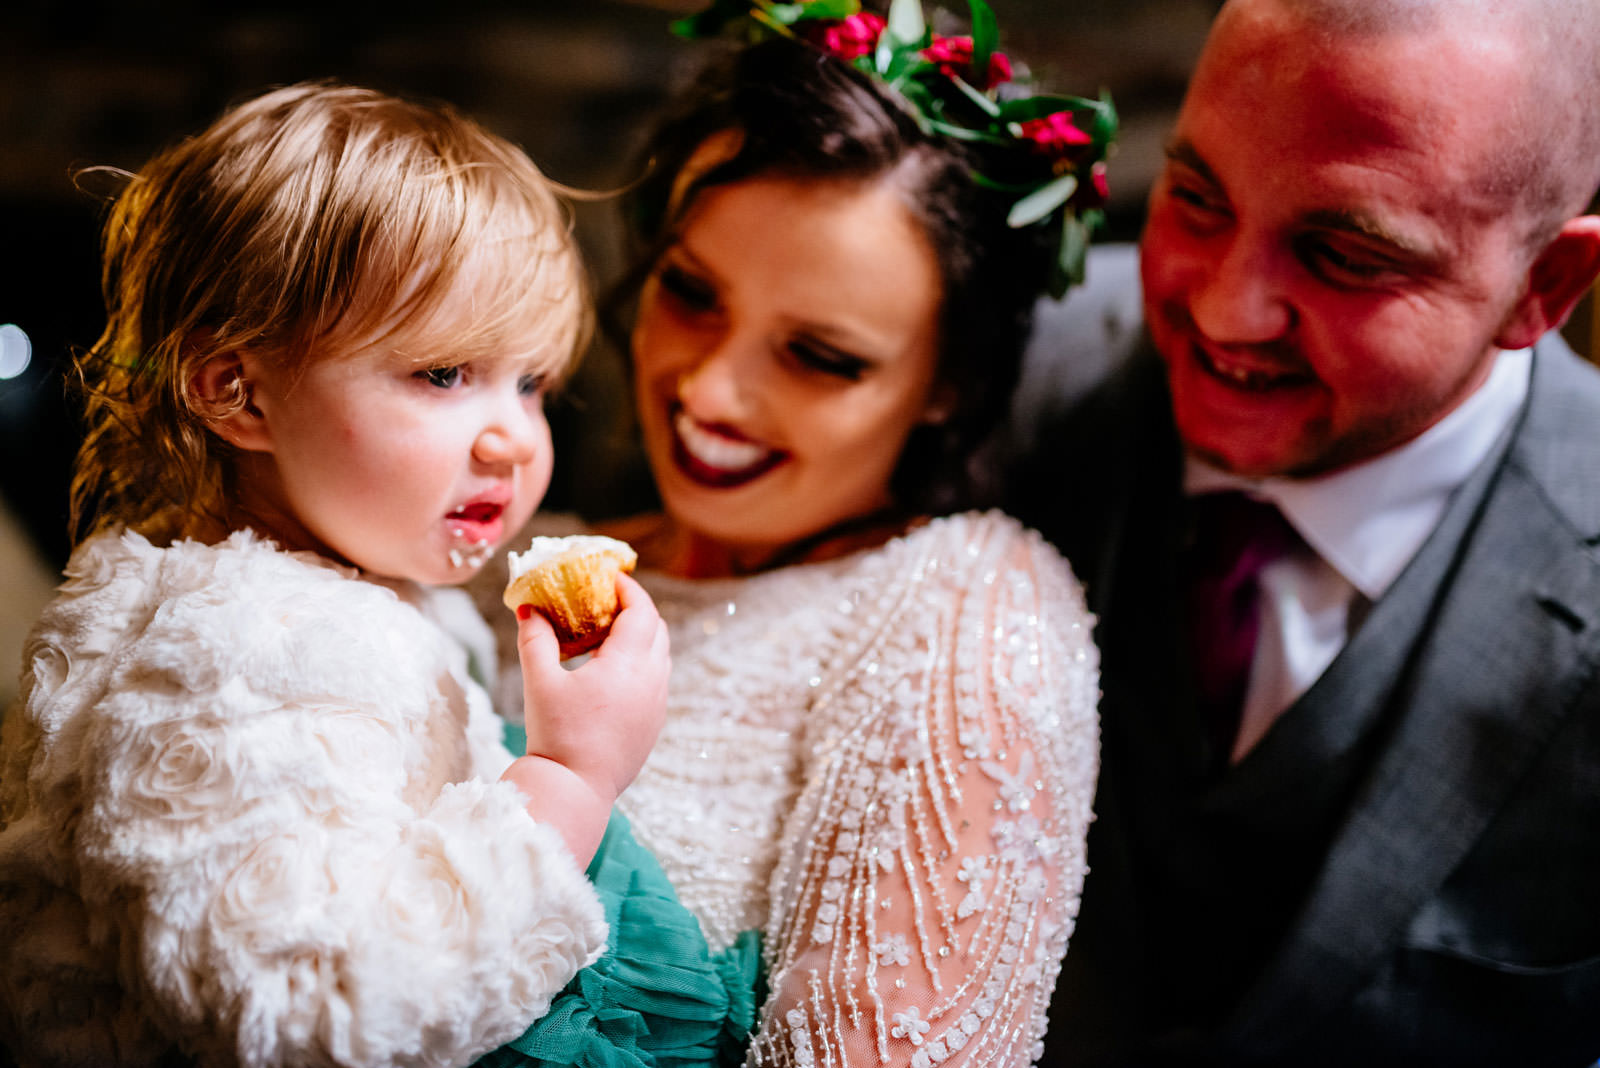 bride groom kid eating cupcake at wedding